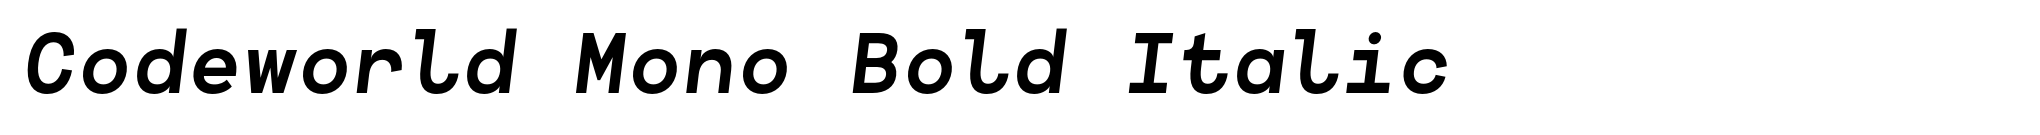 Codeworld Mono Bold Italic image